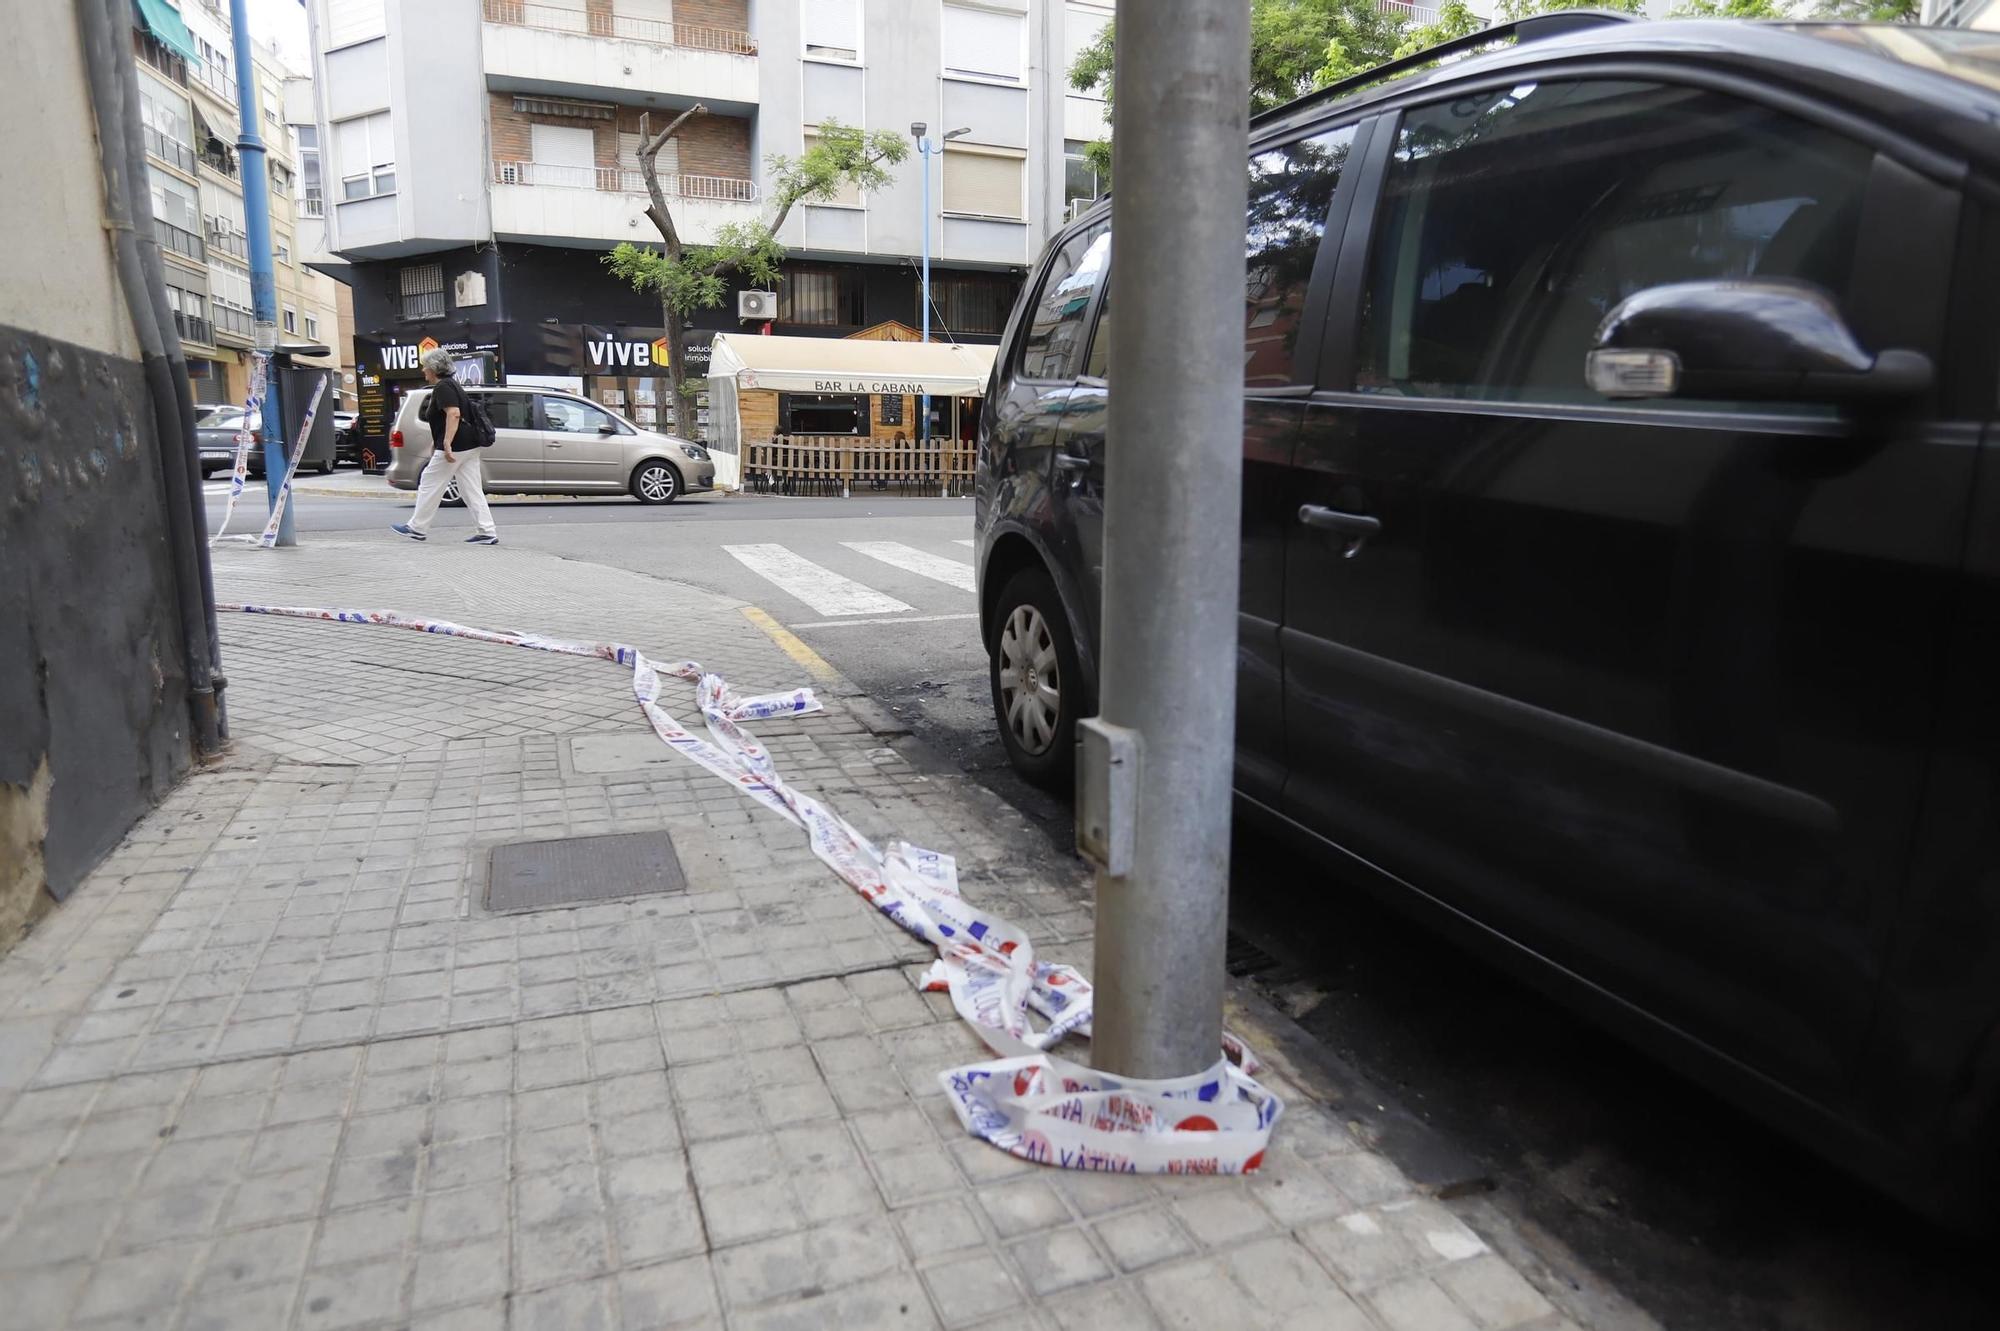 Así se incendió un coche aparcado en la calle Juan XXIII de Xàtiva